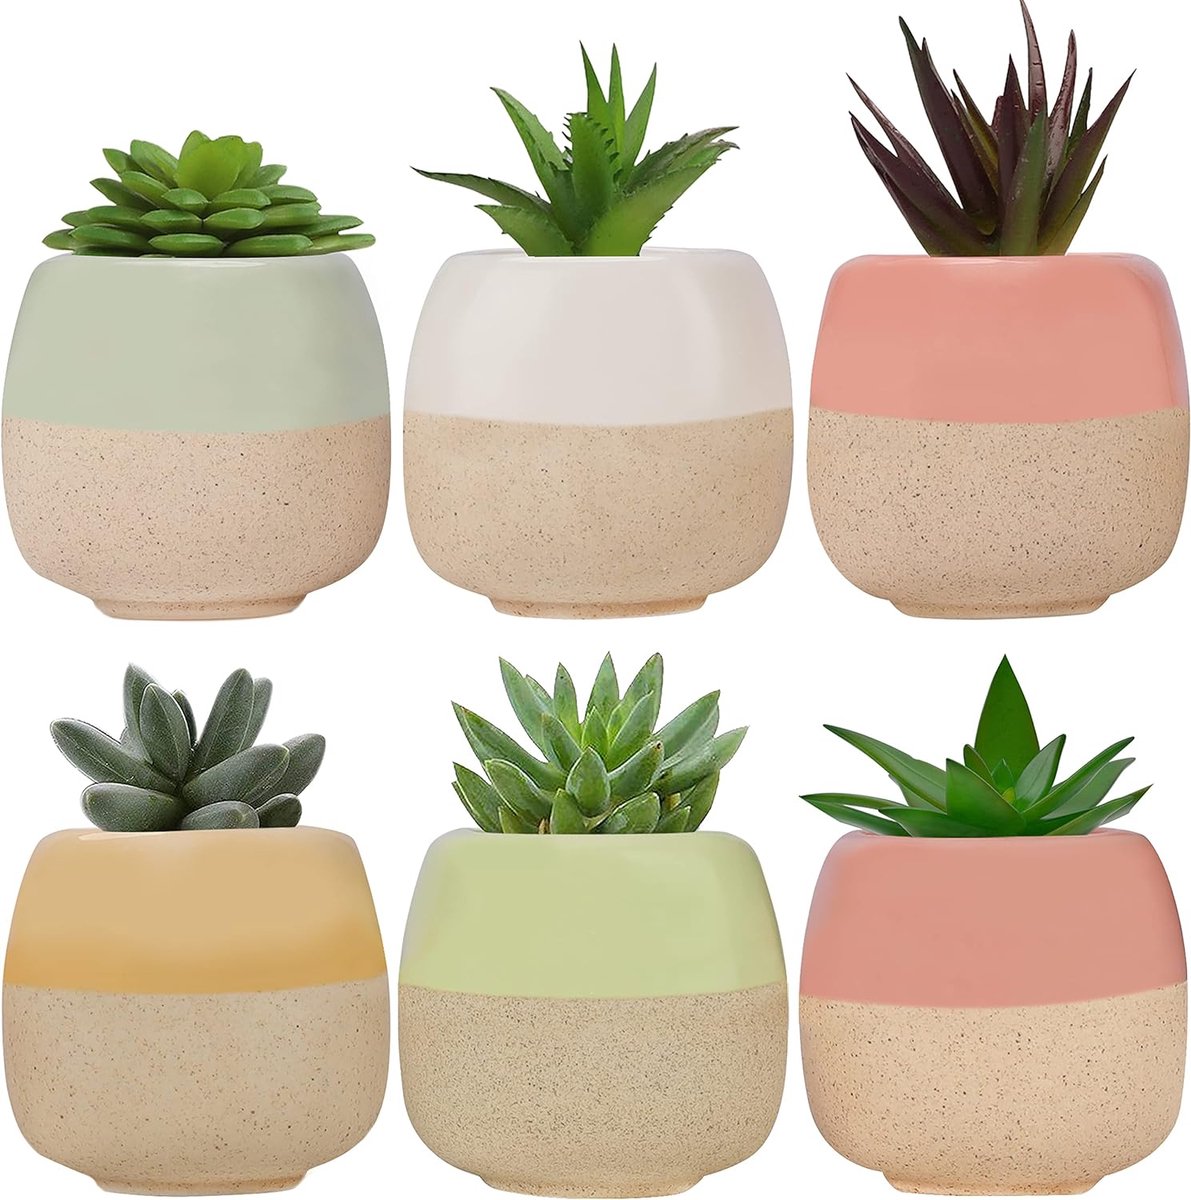 Mini-bloempot keramiek (6 stuks) – L 6 x H 5 cm kleine bloempotten cactussen pot met afvoergat voor thuis kantoor binnen buiten tuin – decoratieve vetplanten pot & cactuspot kleine